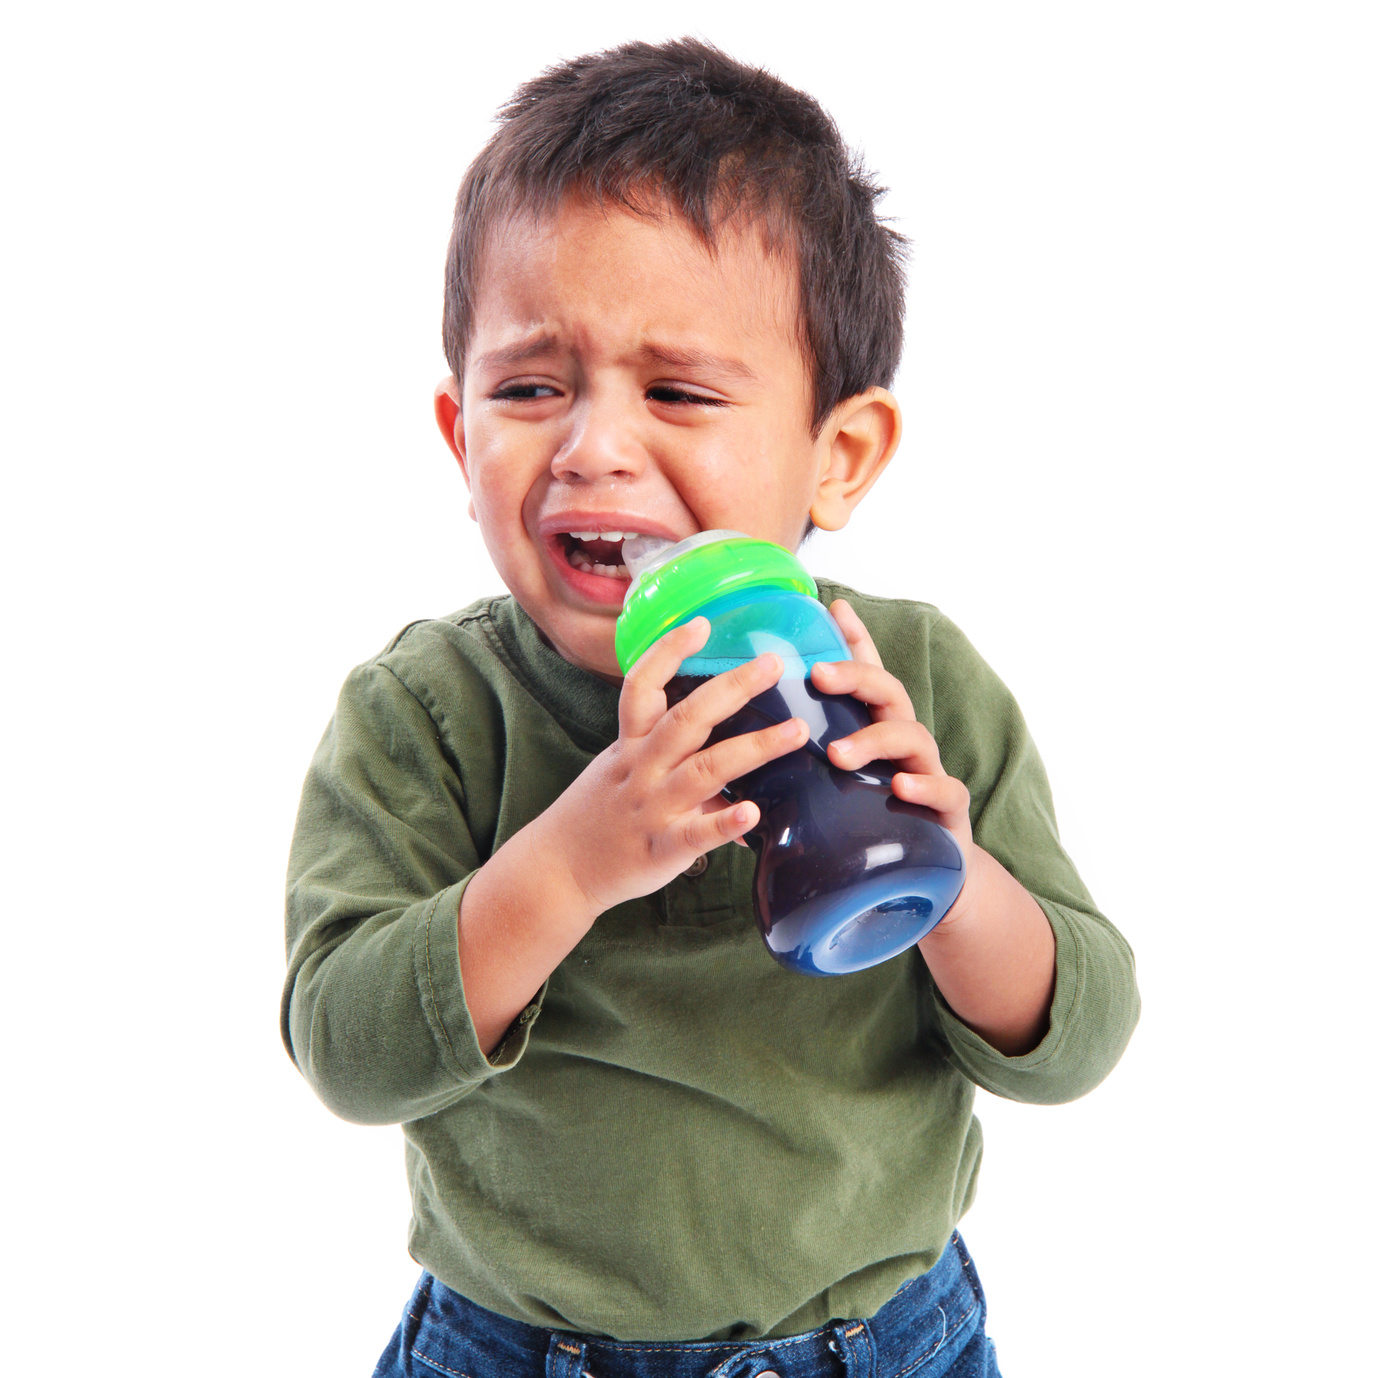 Tazze con beccuccio per bambini: limitarne l'uso oltre l'anno